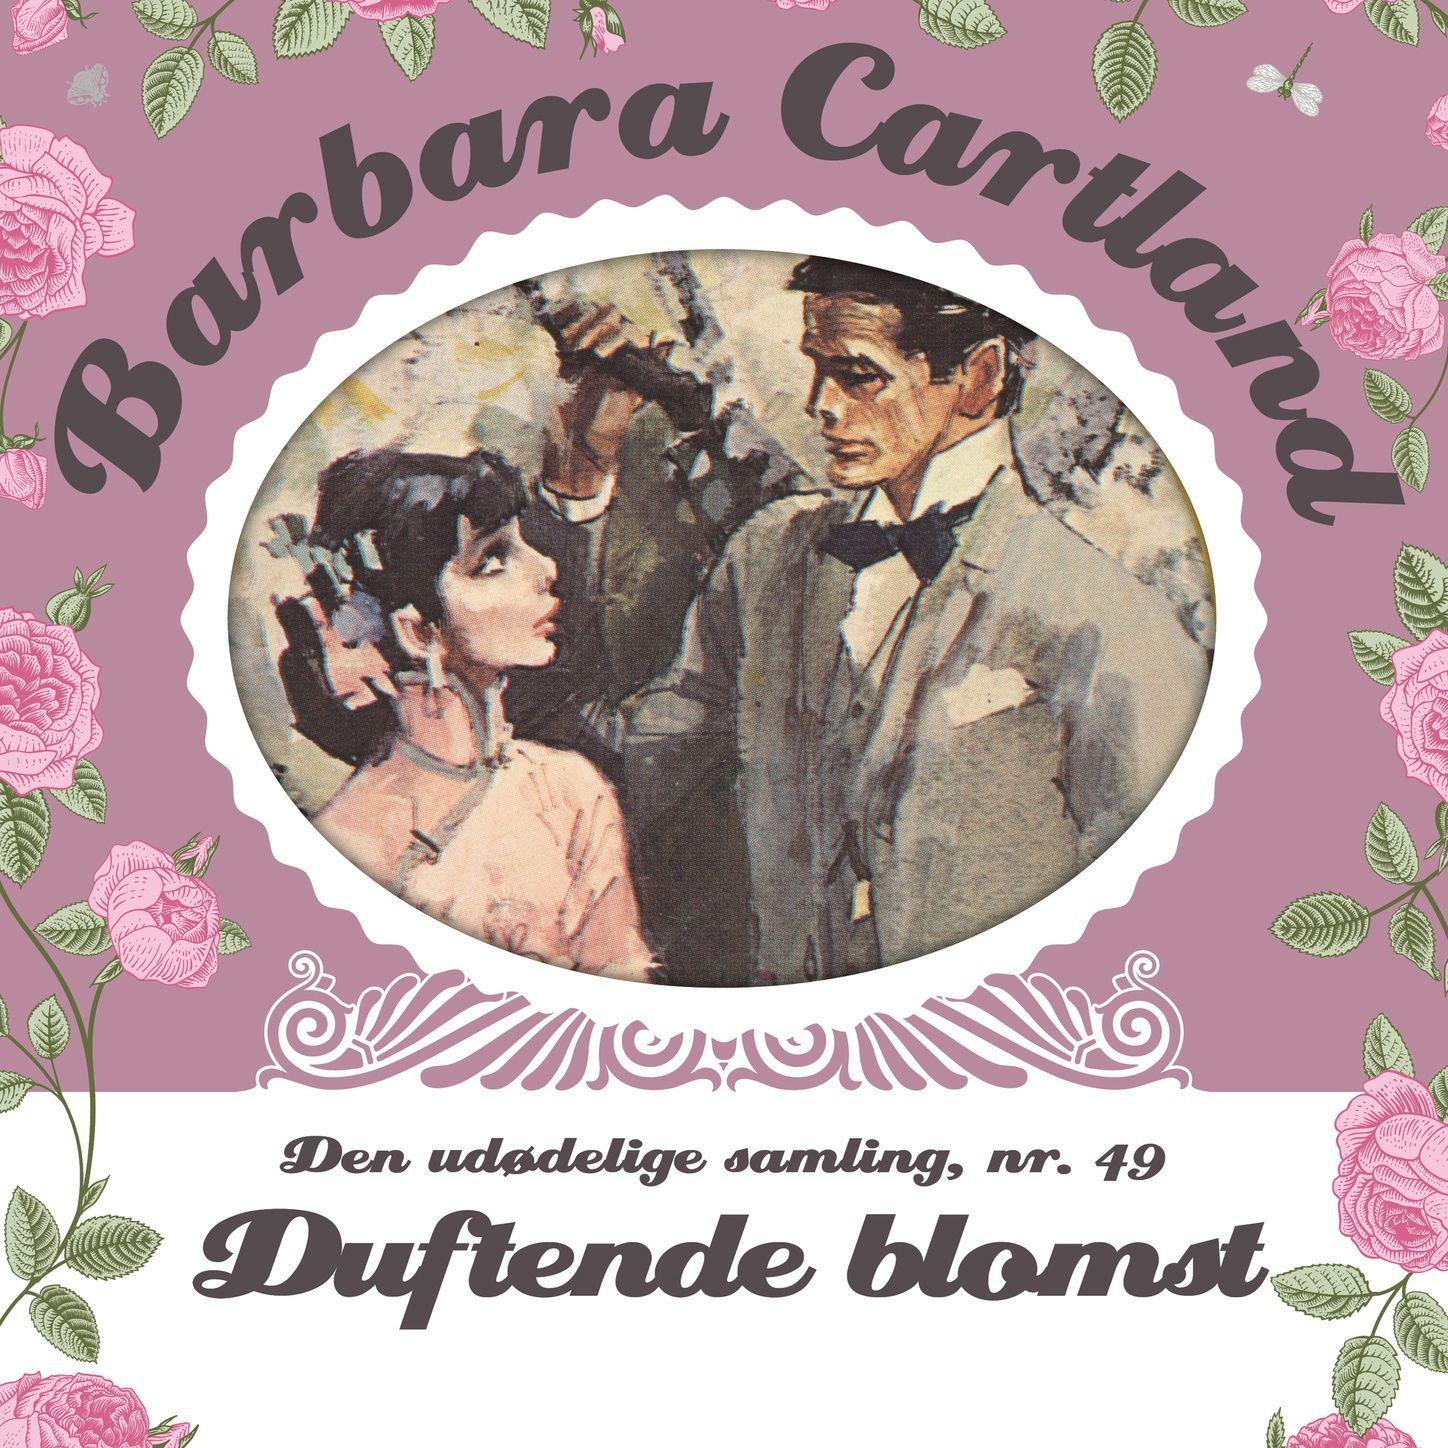 Duftende blomst  Barbara Cartland  Den ud delige samling 49 uforkortet